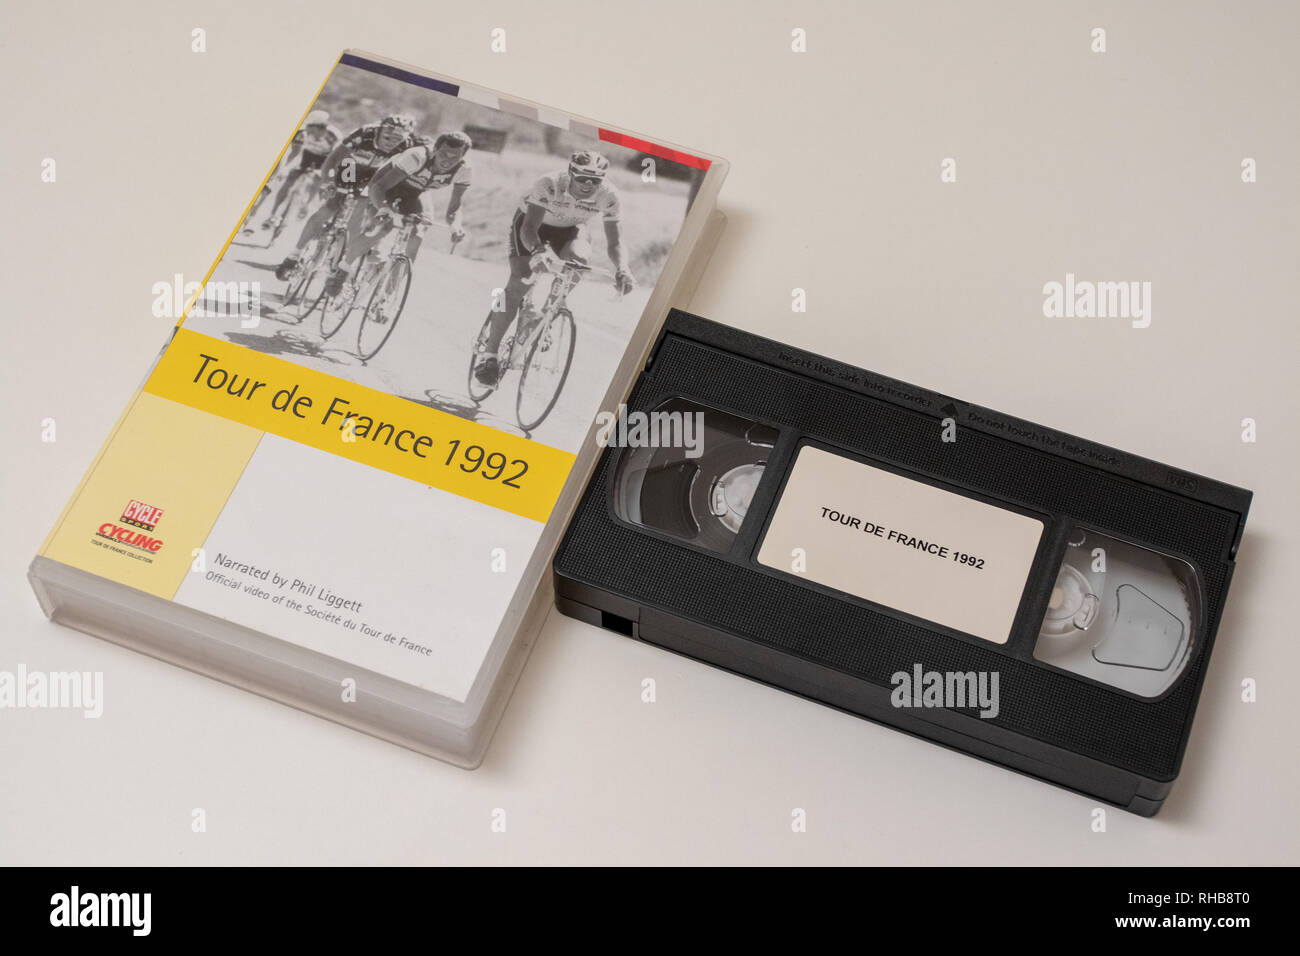 VHS tape cassette of the 1992 Tour de France Stock Photo